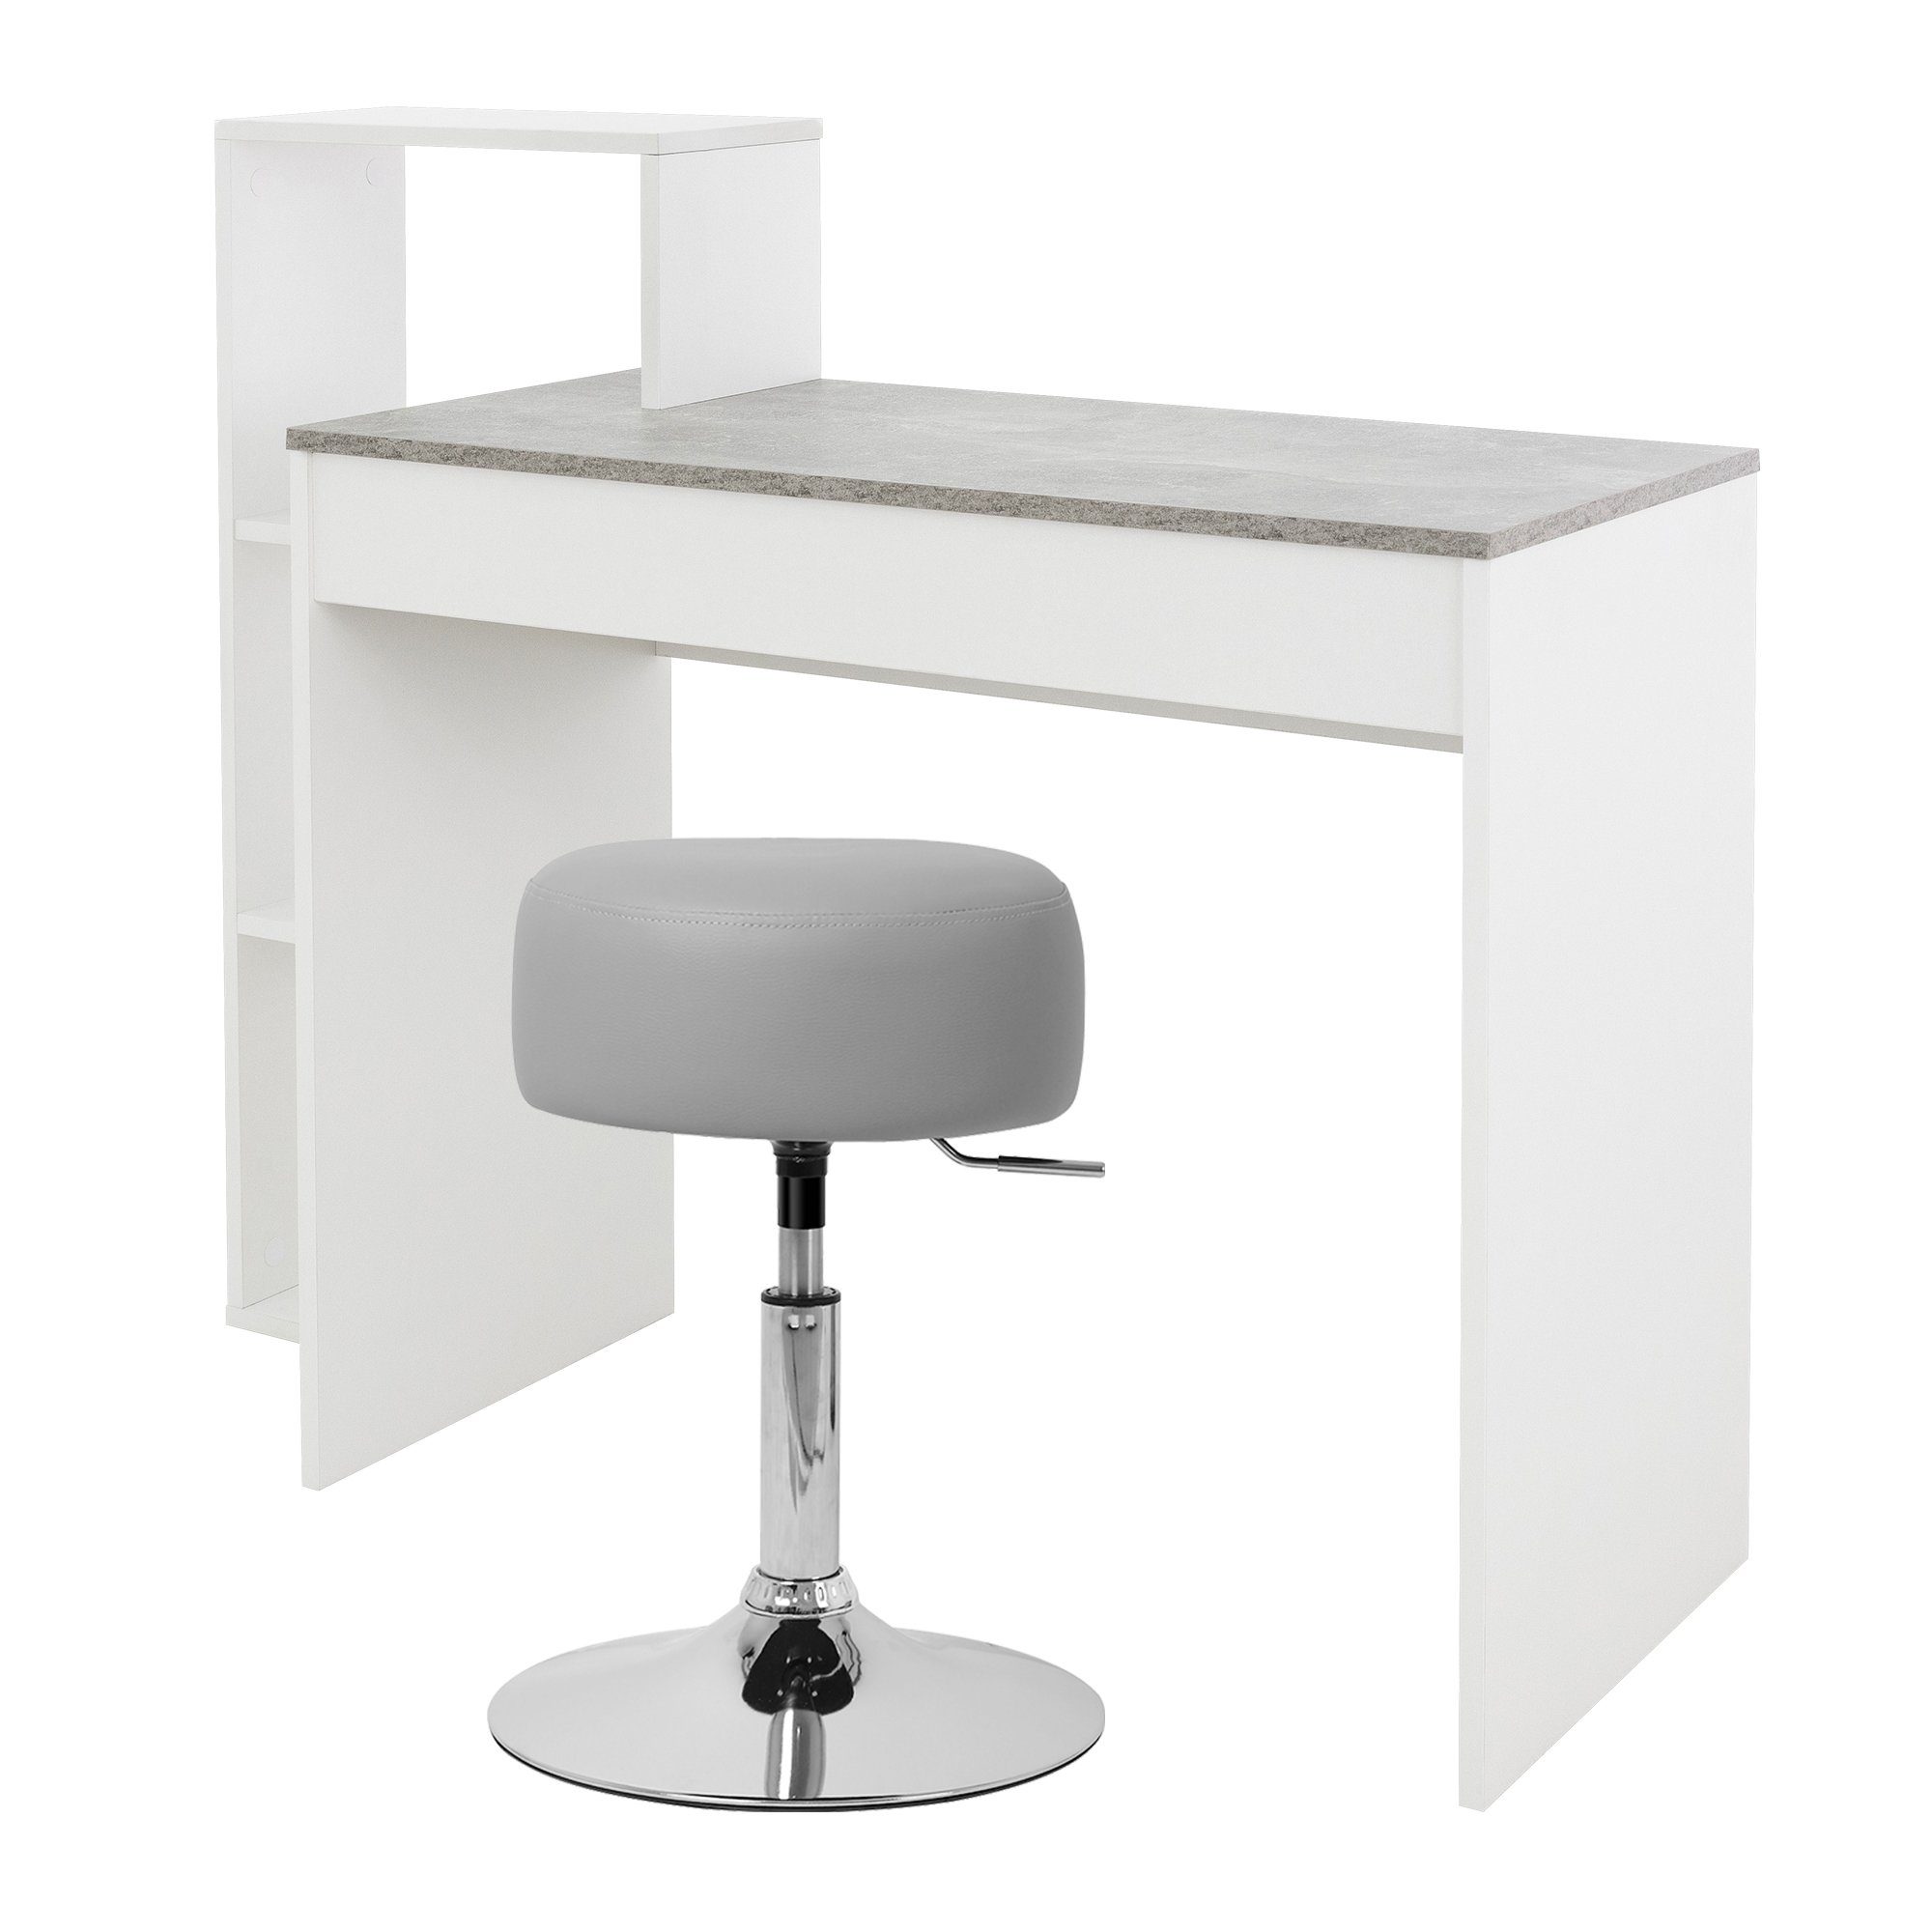 ML-DESIGN Schreibtisch Schreibtisch mit Sitzhocker 110x72x40 cm Weiß/Beton-Optik, Weiß/Beton 110x72cm 3 Einlegeböden Hocker Hellgrau 33cm verstellbar